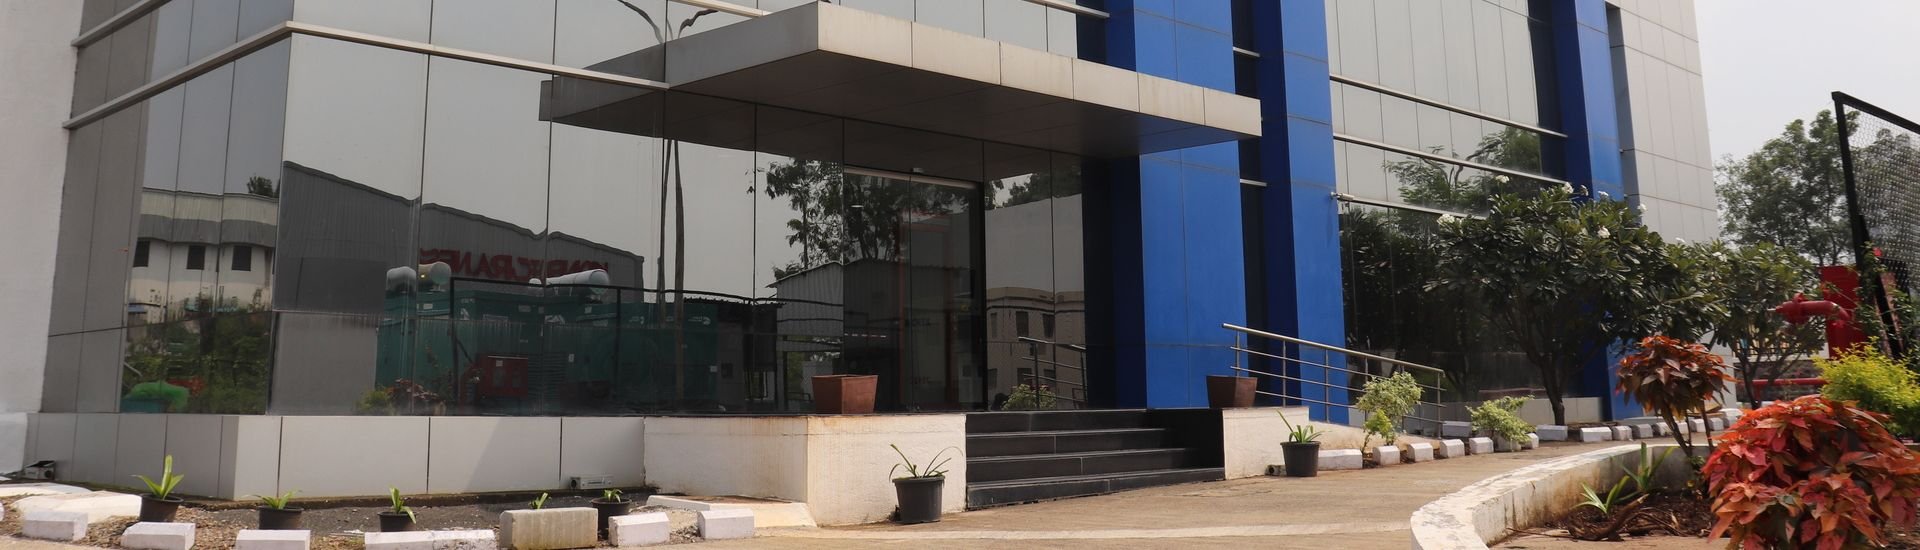 Pune Data Center